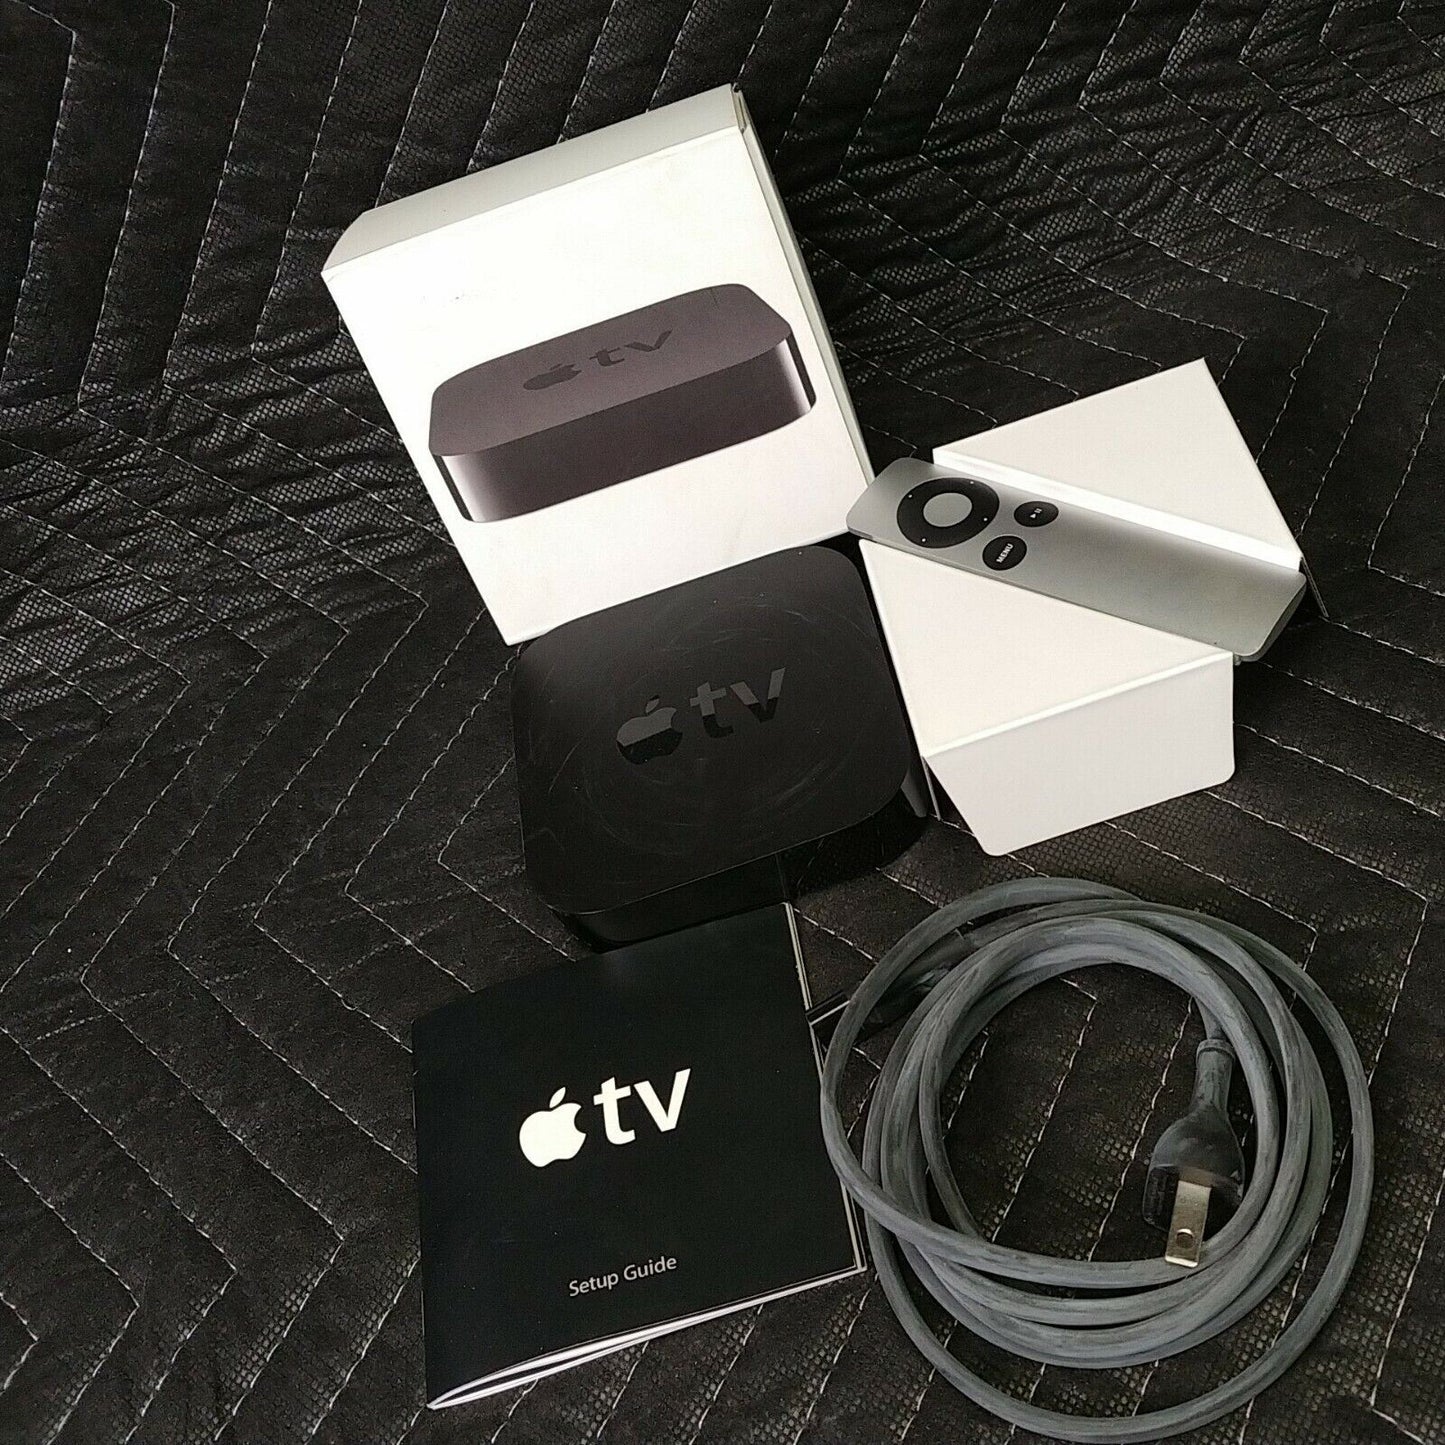 Apple TV (2nd Generation) 8GB Media Streamer - A1378 (FK15)